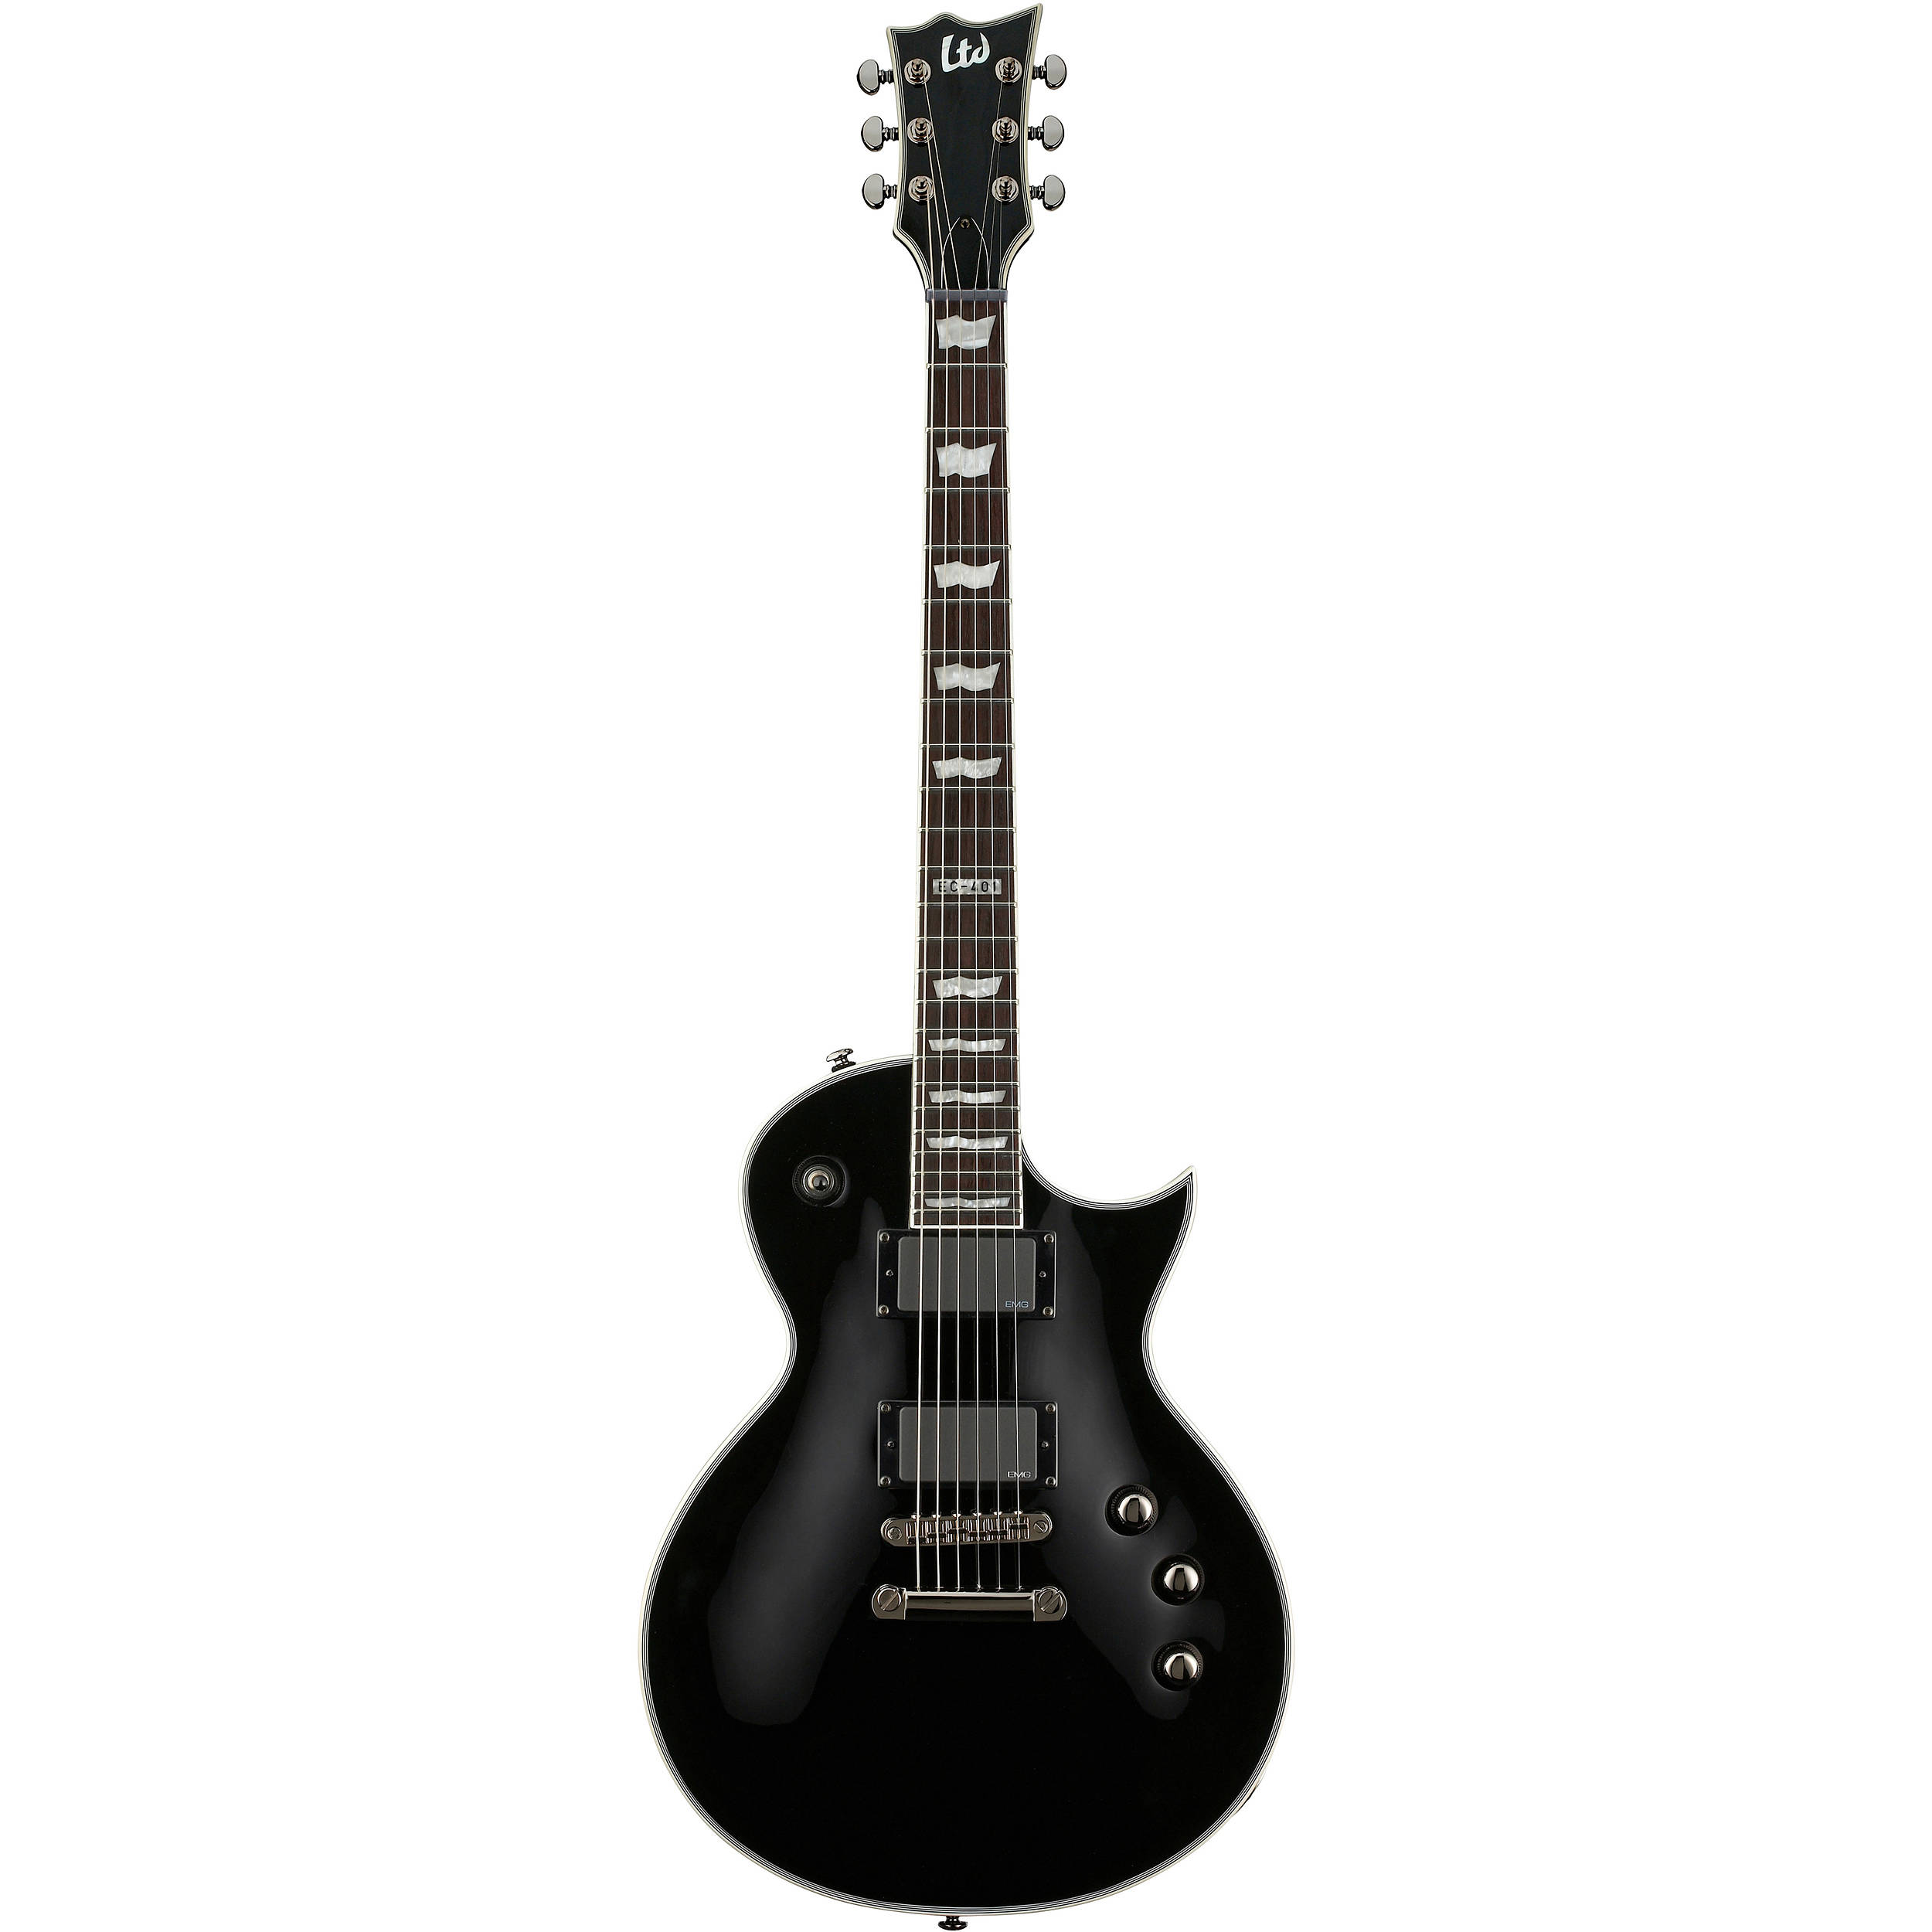 ESP LTD EC-401 Electric Guitar (Black) LEC401BLK B&H Photo Video